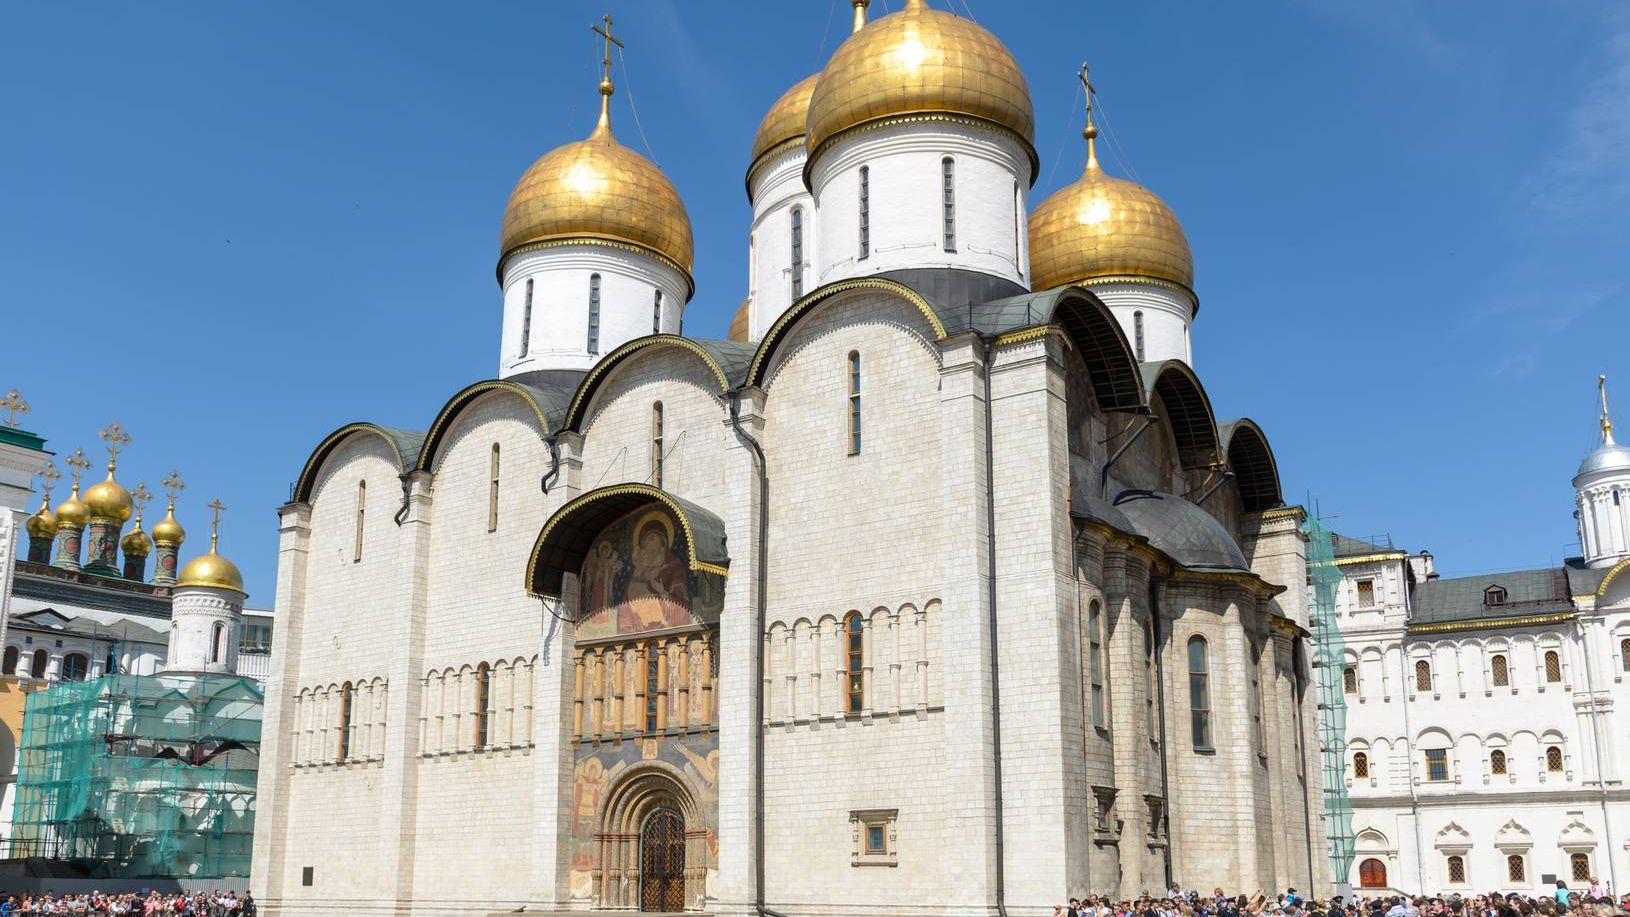 Успенский собор, Кремль, Москва. 12.07.2014